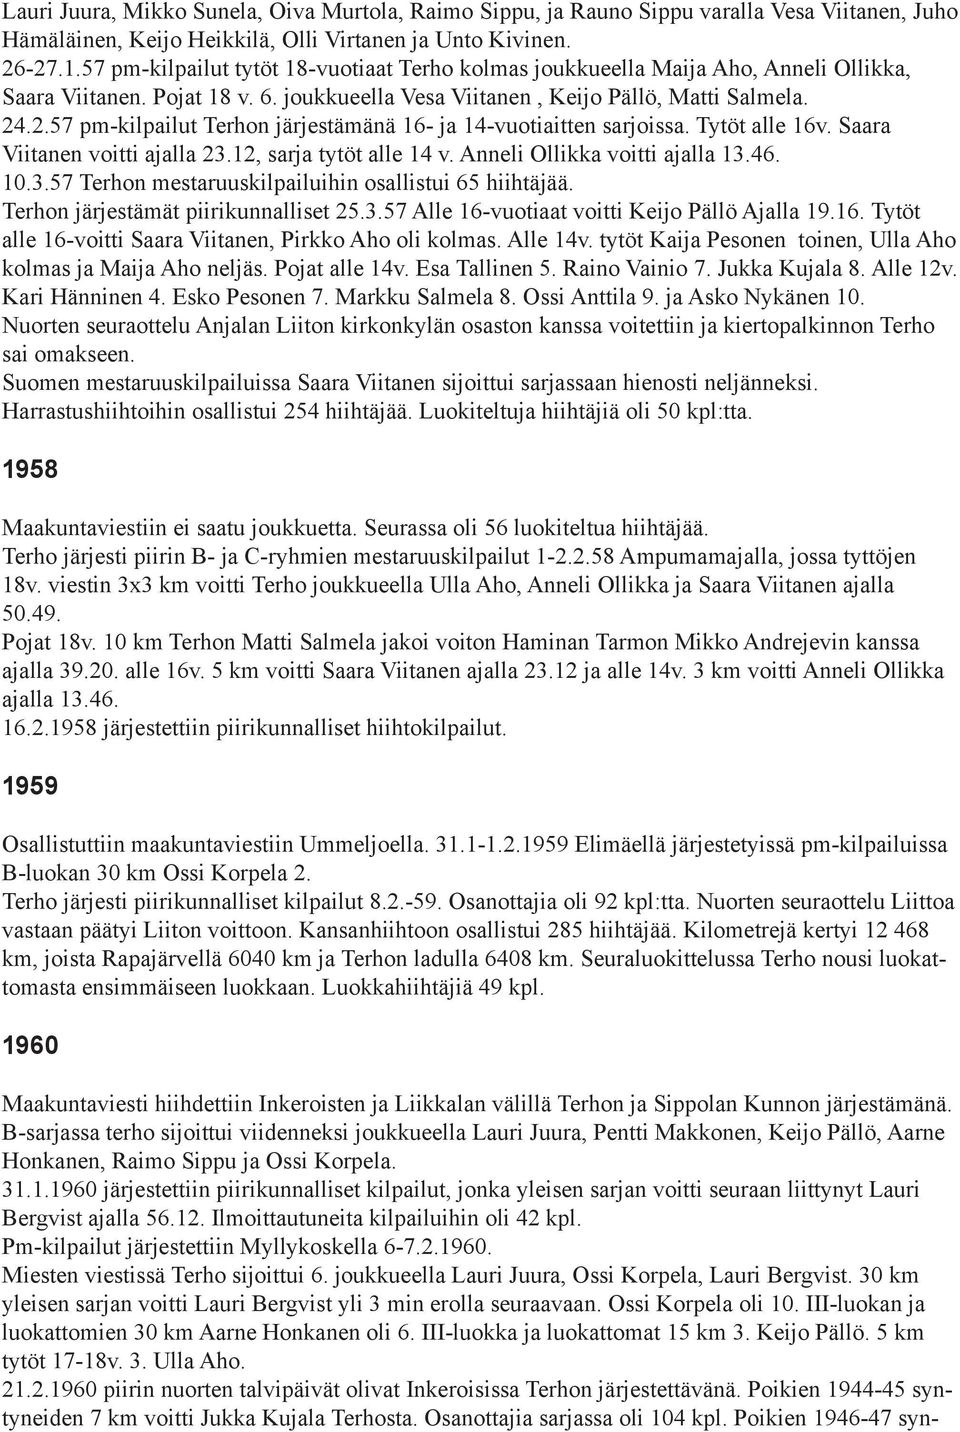 .2.57 pm-kilpailut Terhon järjestämänä 16- ja 14-vuotiaitten sarjoissa. Tytöt alle 16v. Saara Viitanen voitti ajalla 23.12, sarja tytöt alle 14 v. Anneli Ollikka voitti ajalla 13.46. 10.3.57 Terhon mestaruuskilpailuihin osallistui 65 hiihtäjää.